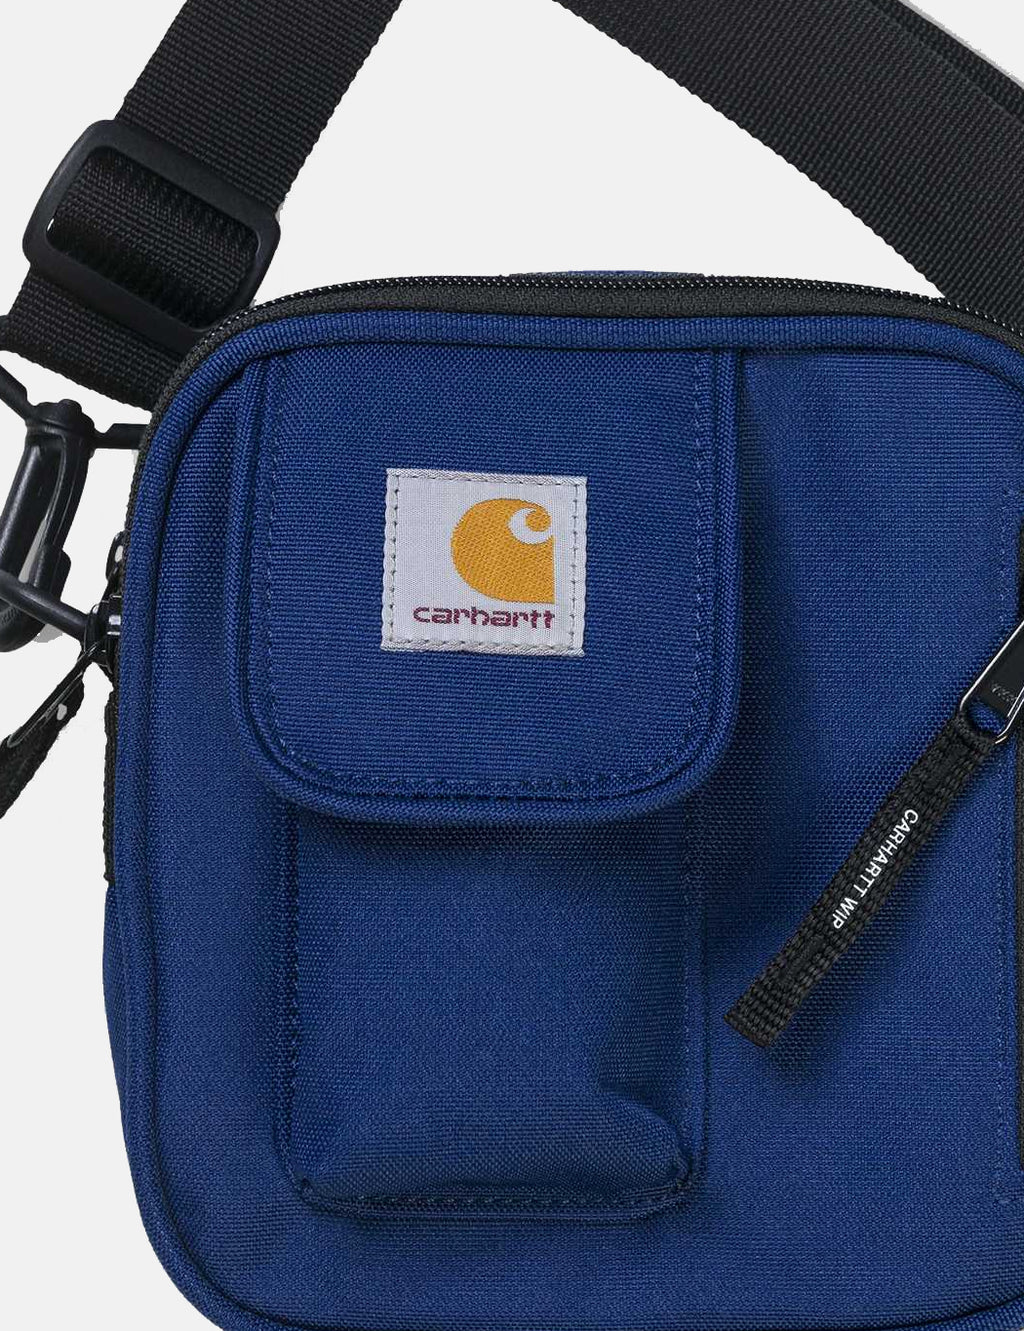 Carhartt Watt Essentials-Bag (Small) - Metro Blue